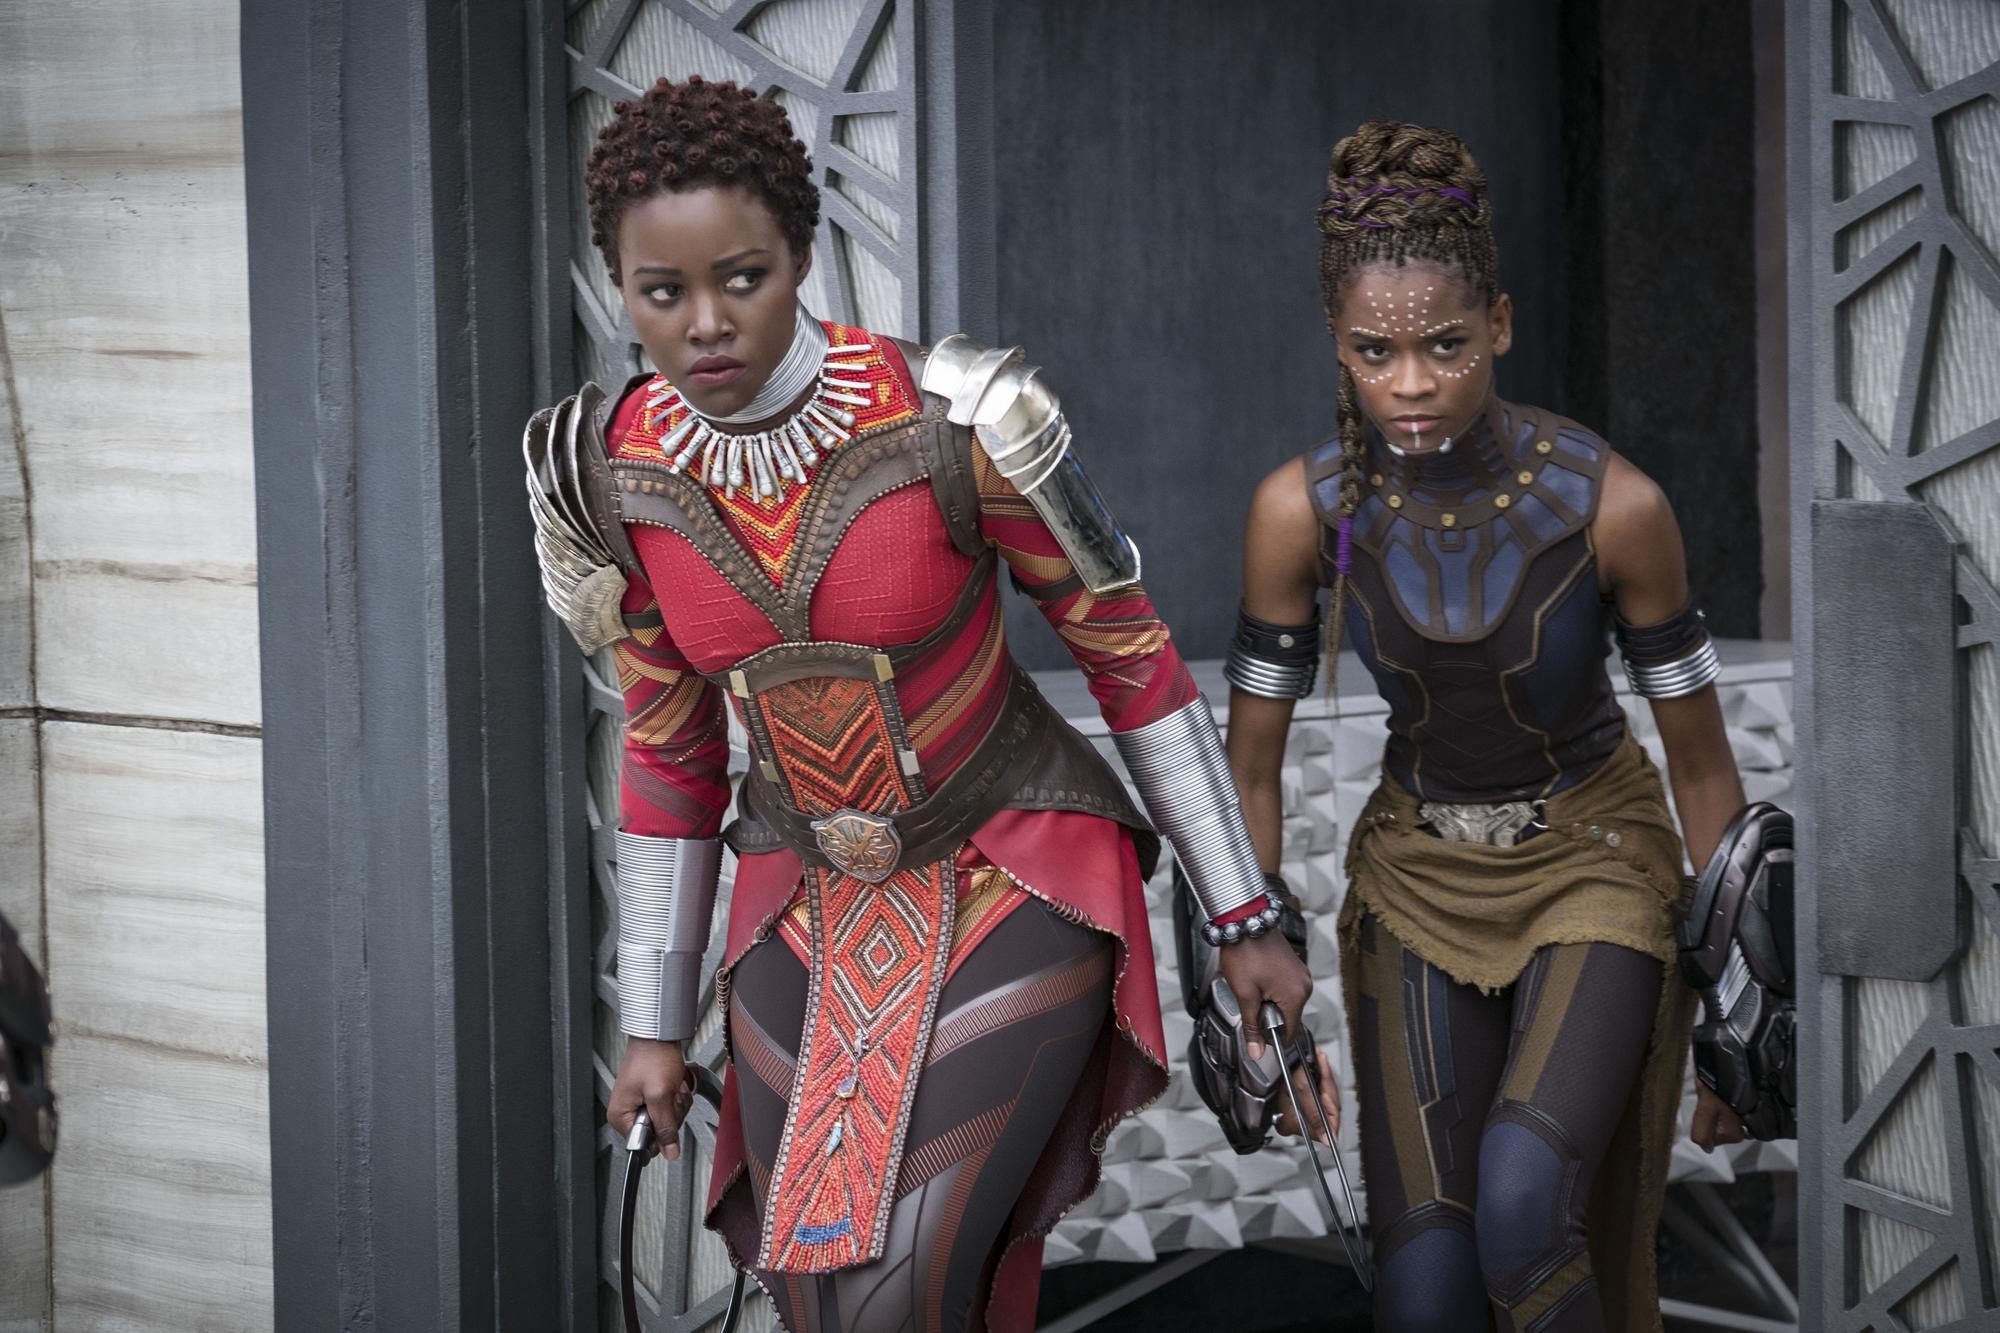 Pri stvárňovaní Wakandy sú kombinované prvky futurizmu a tradičnej africkej kultúry. Vidieť to napríklad na dizajne uniforiem týchto postáv a zbraniach, ktoré držia v rukách.